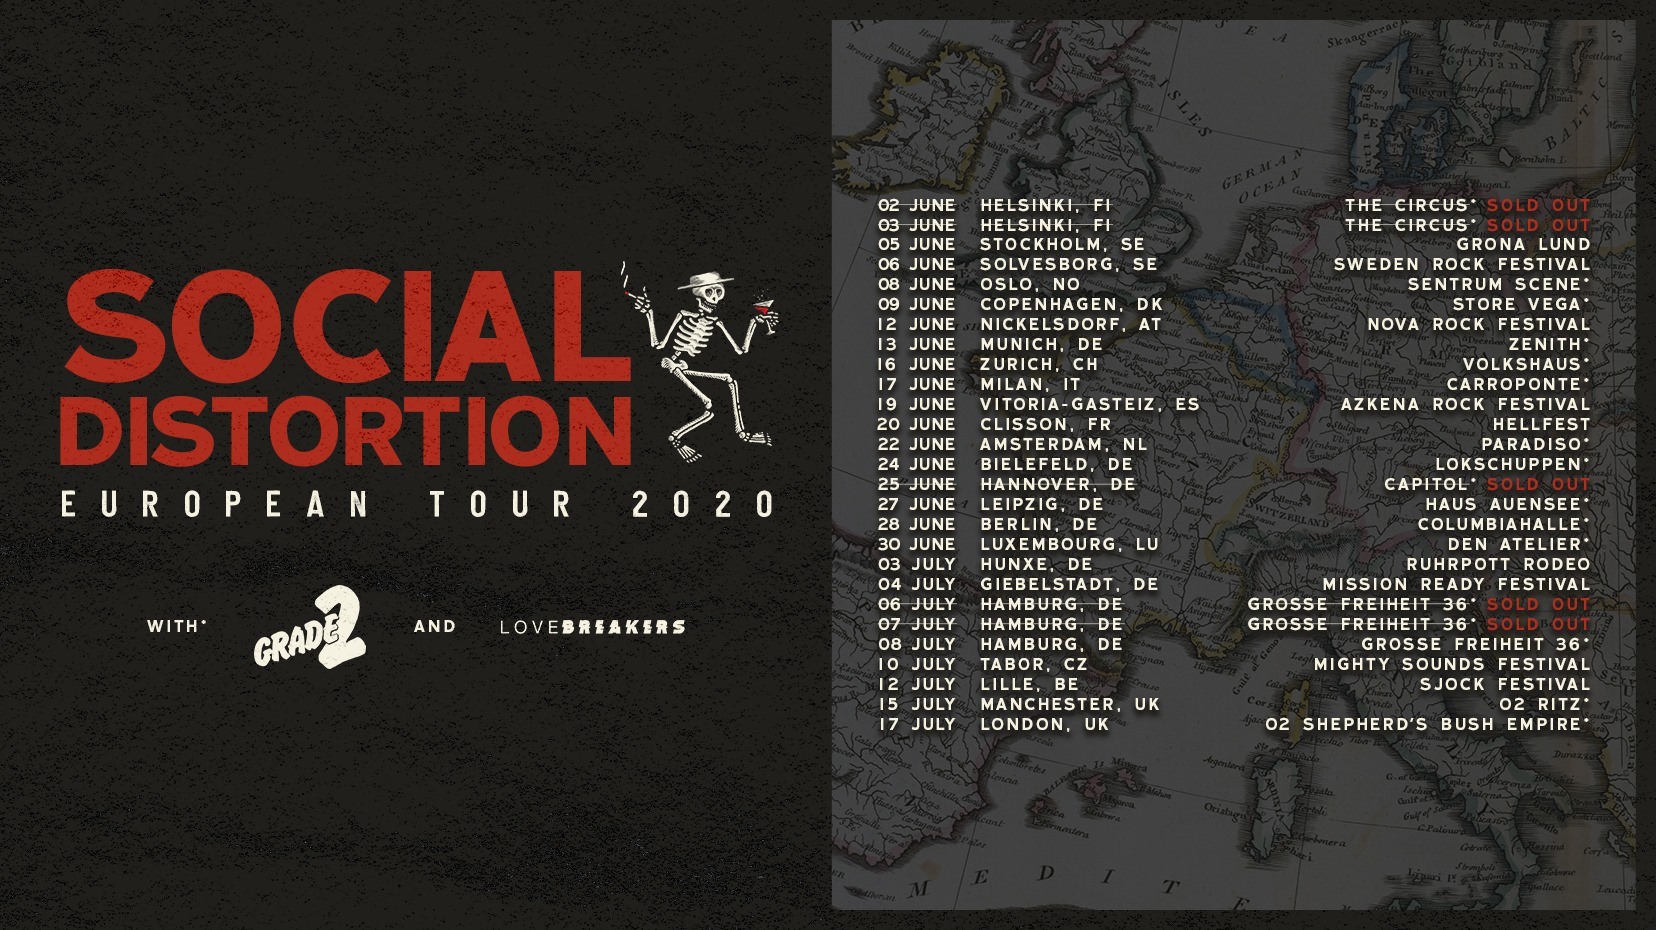 Mike Ness confirma nuevo disco de Social Distortion para 2022 Punkeando!